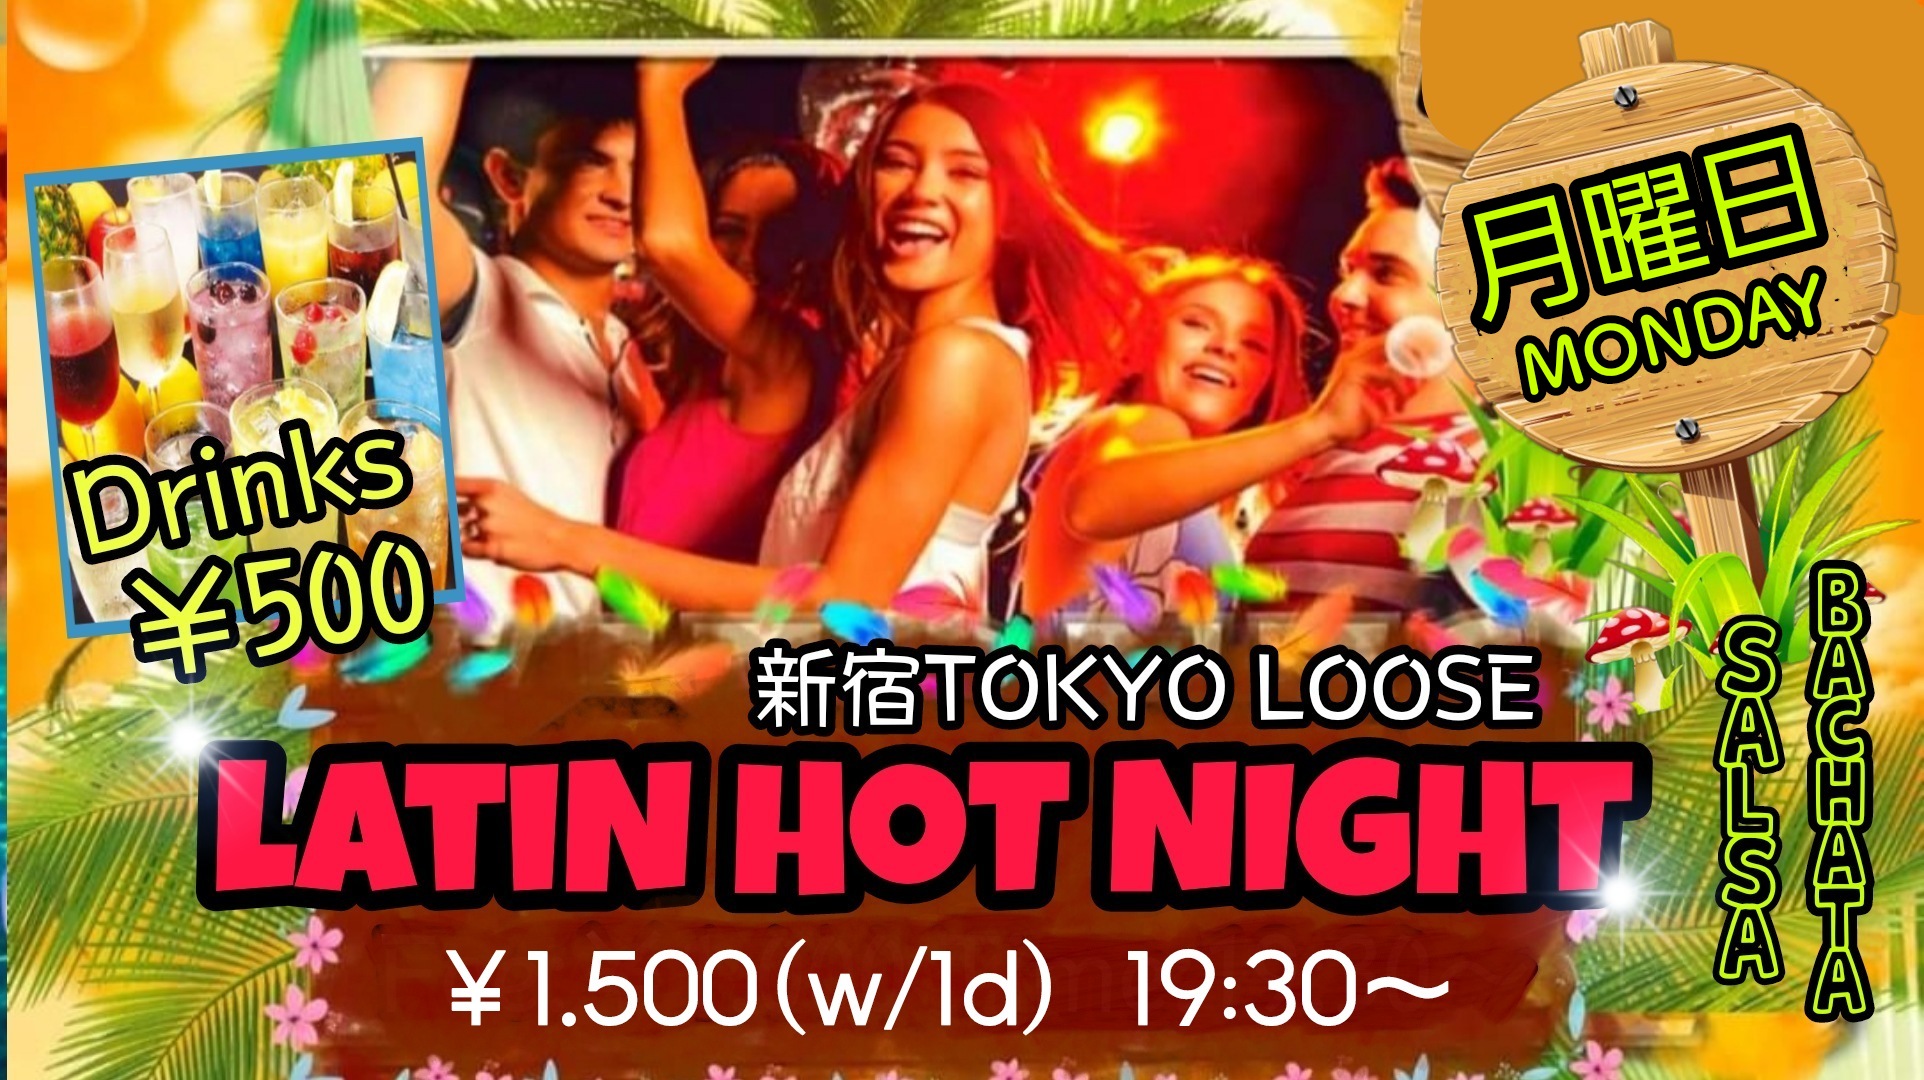 7/11(月)LATIN HOT NIGHT@新宿Tokyo Loose